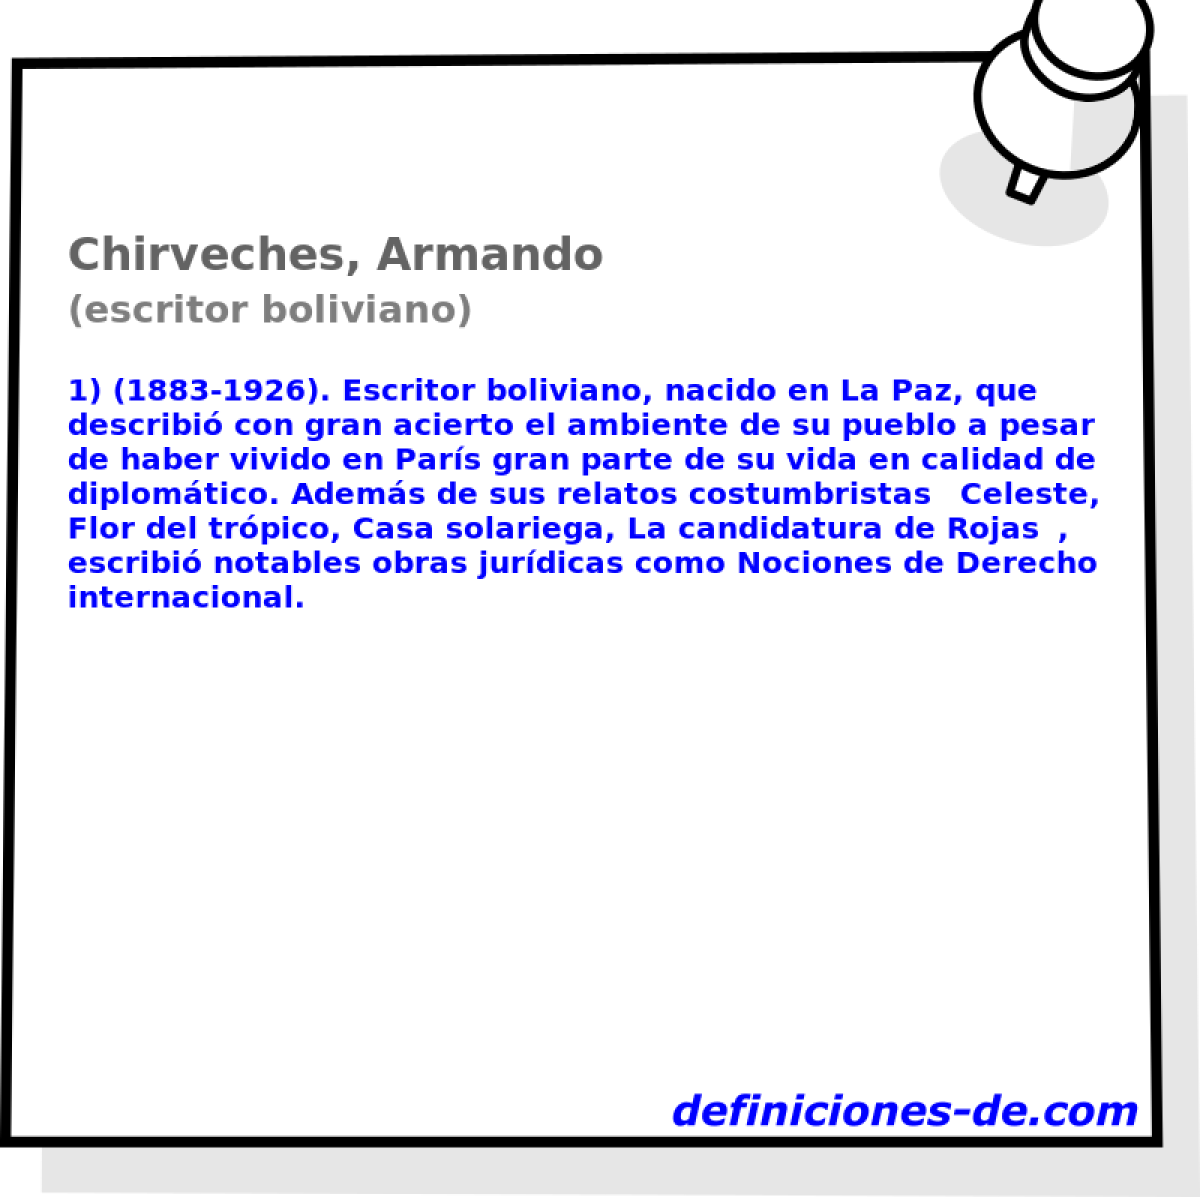 Chirveches, Armando (escritor boliviano)